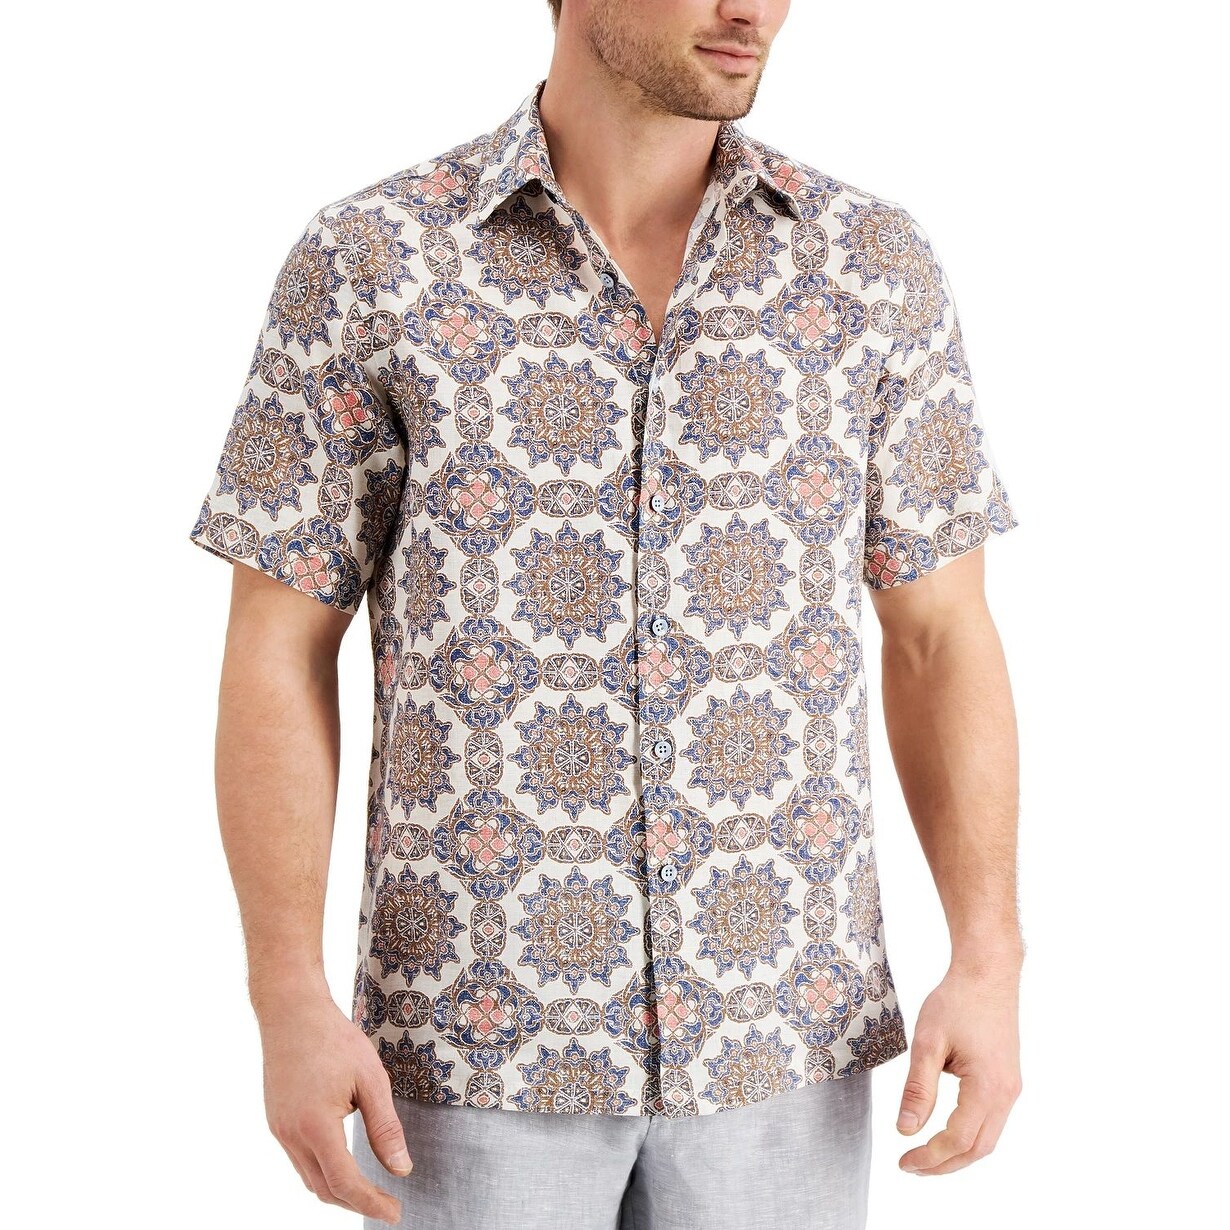 Tasso Elba Mens Dot-Pattern Shirt 